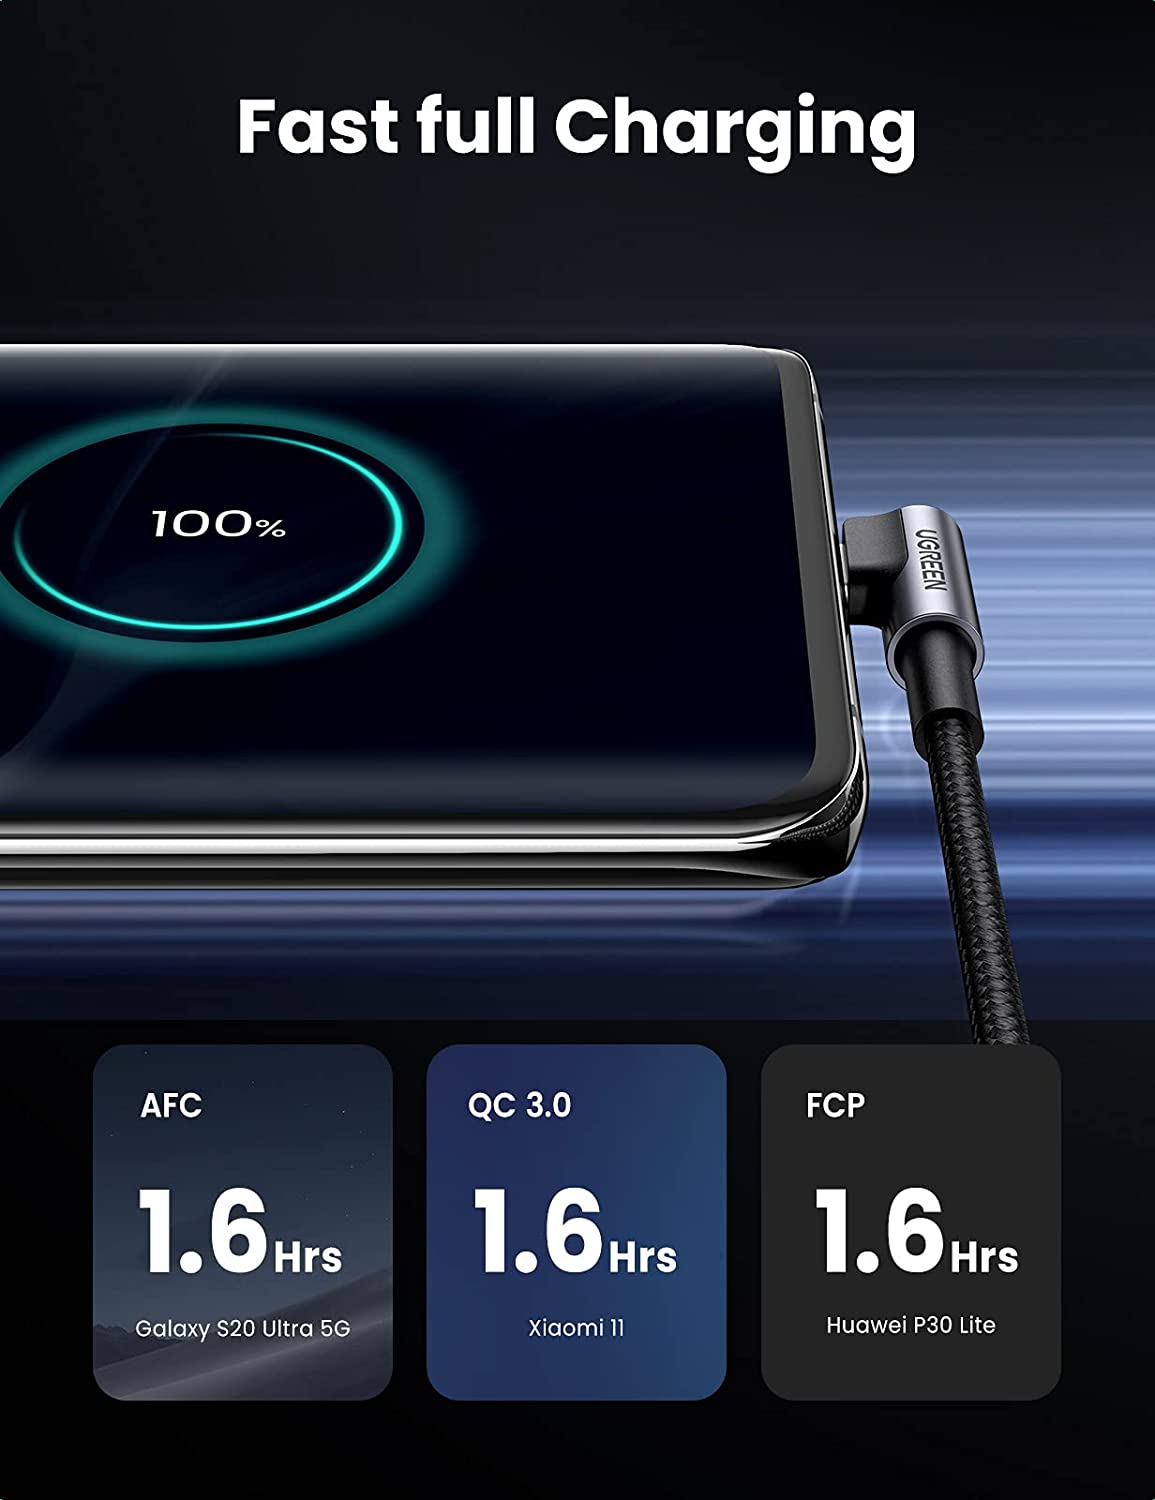 Câble Chargeur USB Type C, Charge Rapide, Cordon, Transfert de Données,  Samsung s21 s20 A51 Xiaomi mi 10 Redmi note 9s 8t